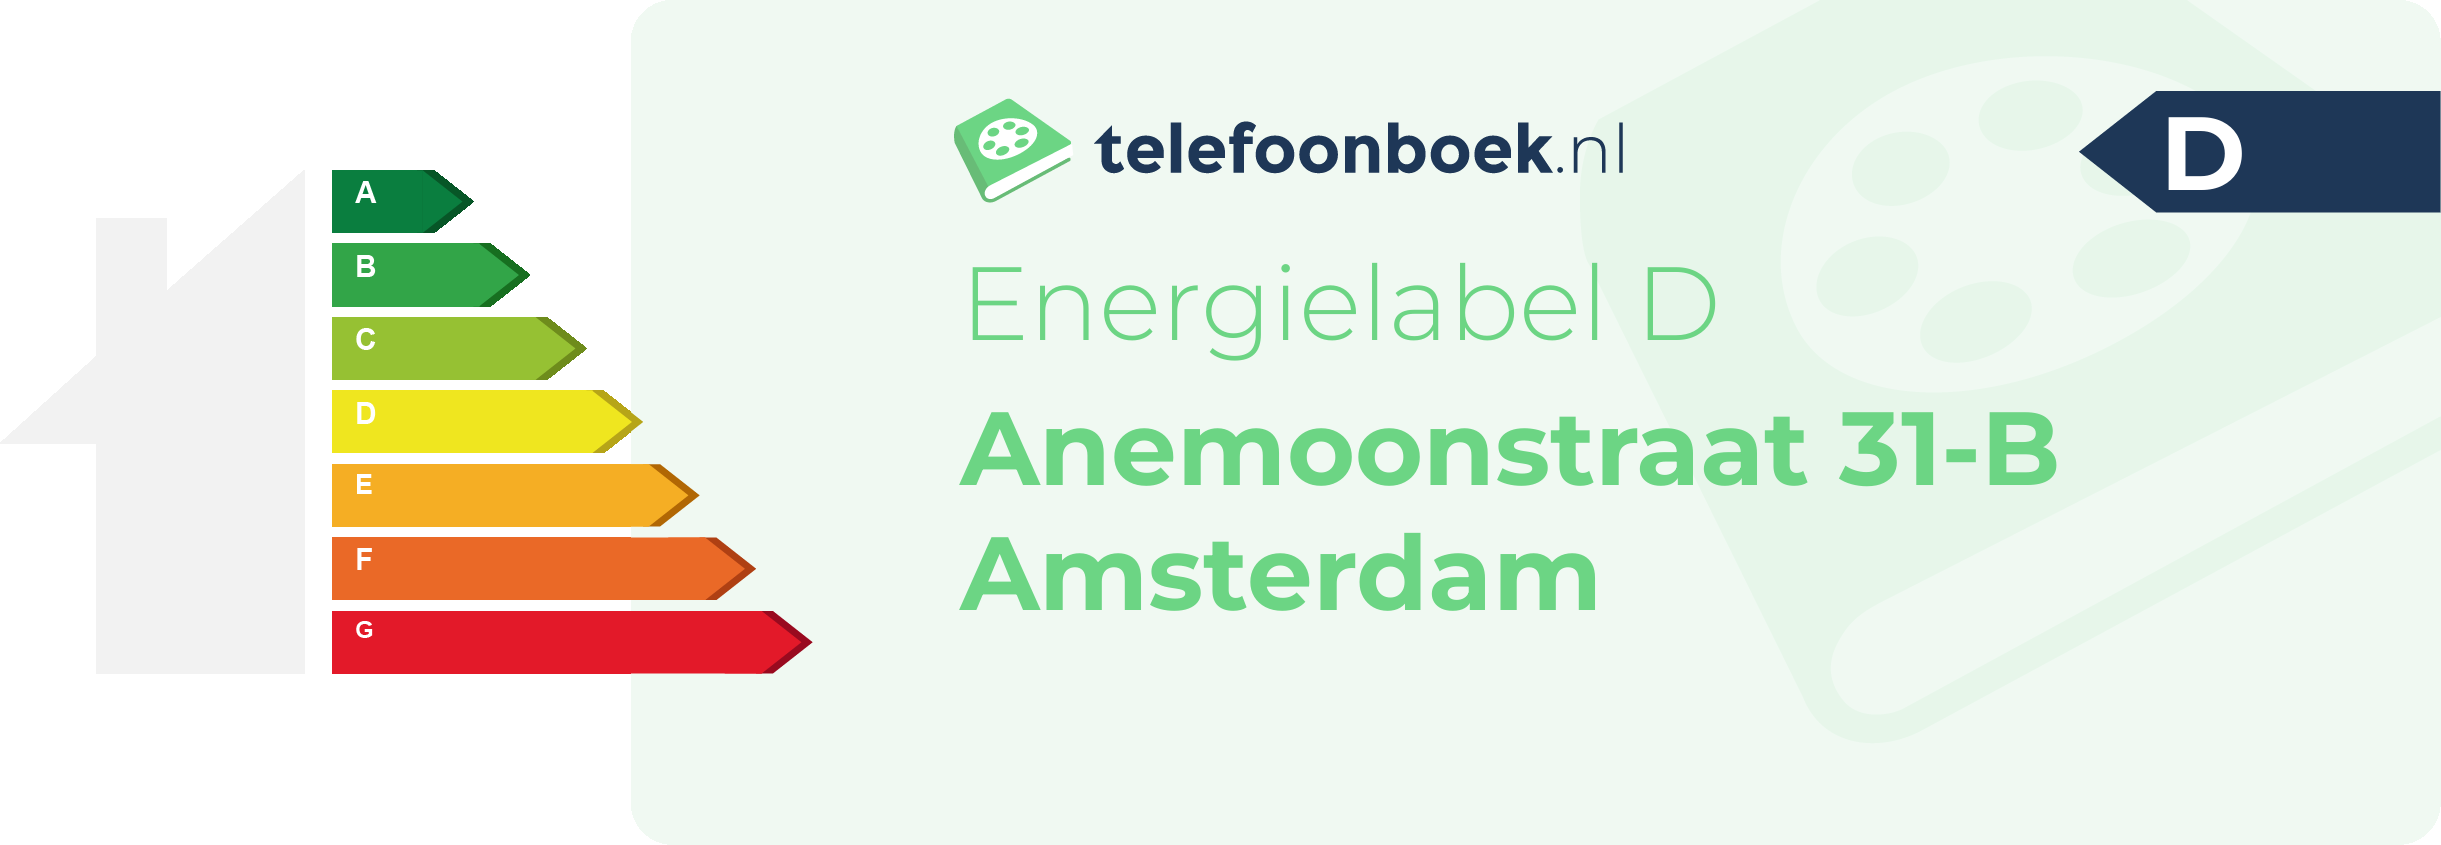 Energielabel Anemoonstraat 31-B Amsterdam